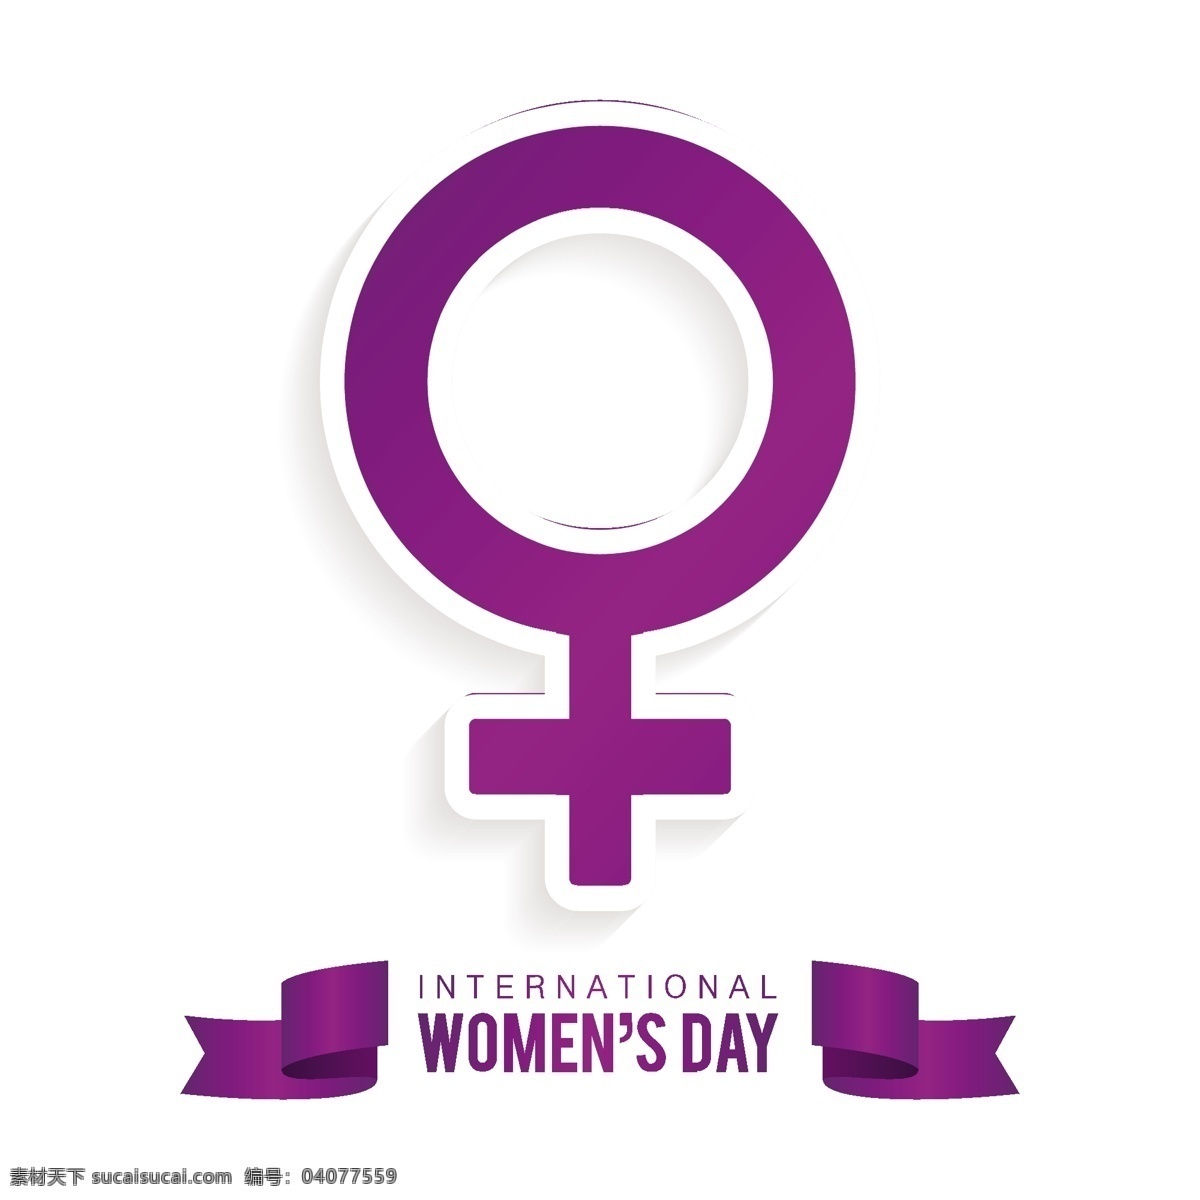 国际妇女节 背景 紫色 女性 符号 庆祝 假日 自由 国际 游行 妇女 平等 权利